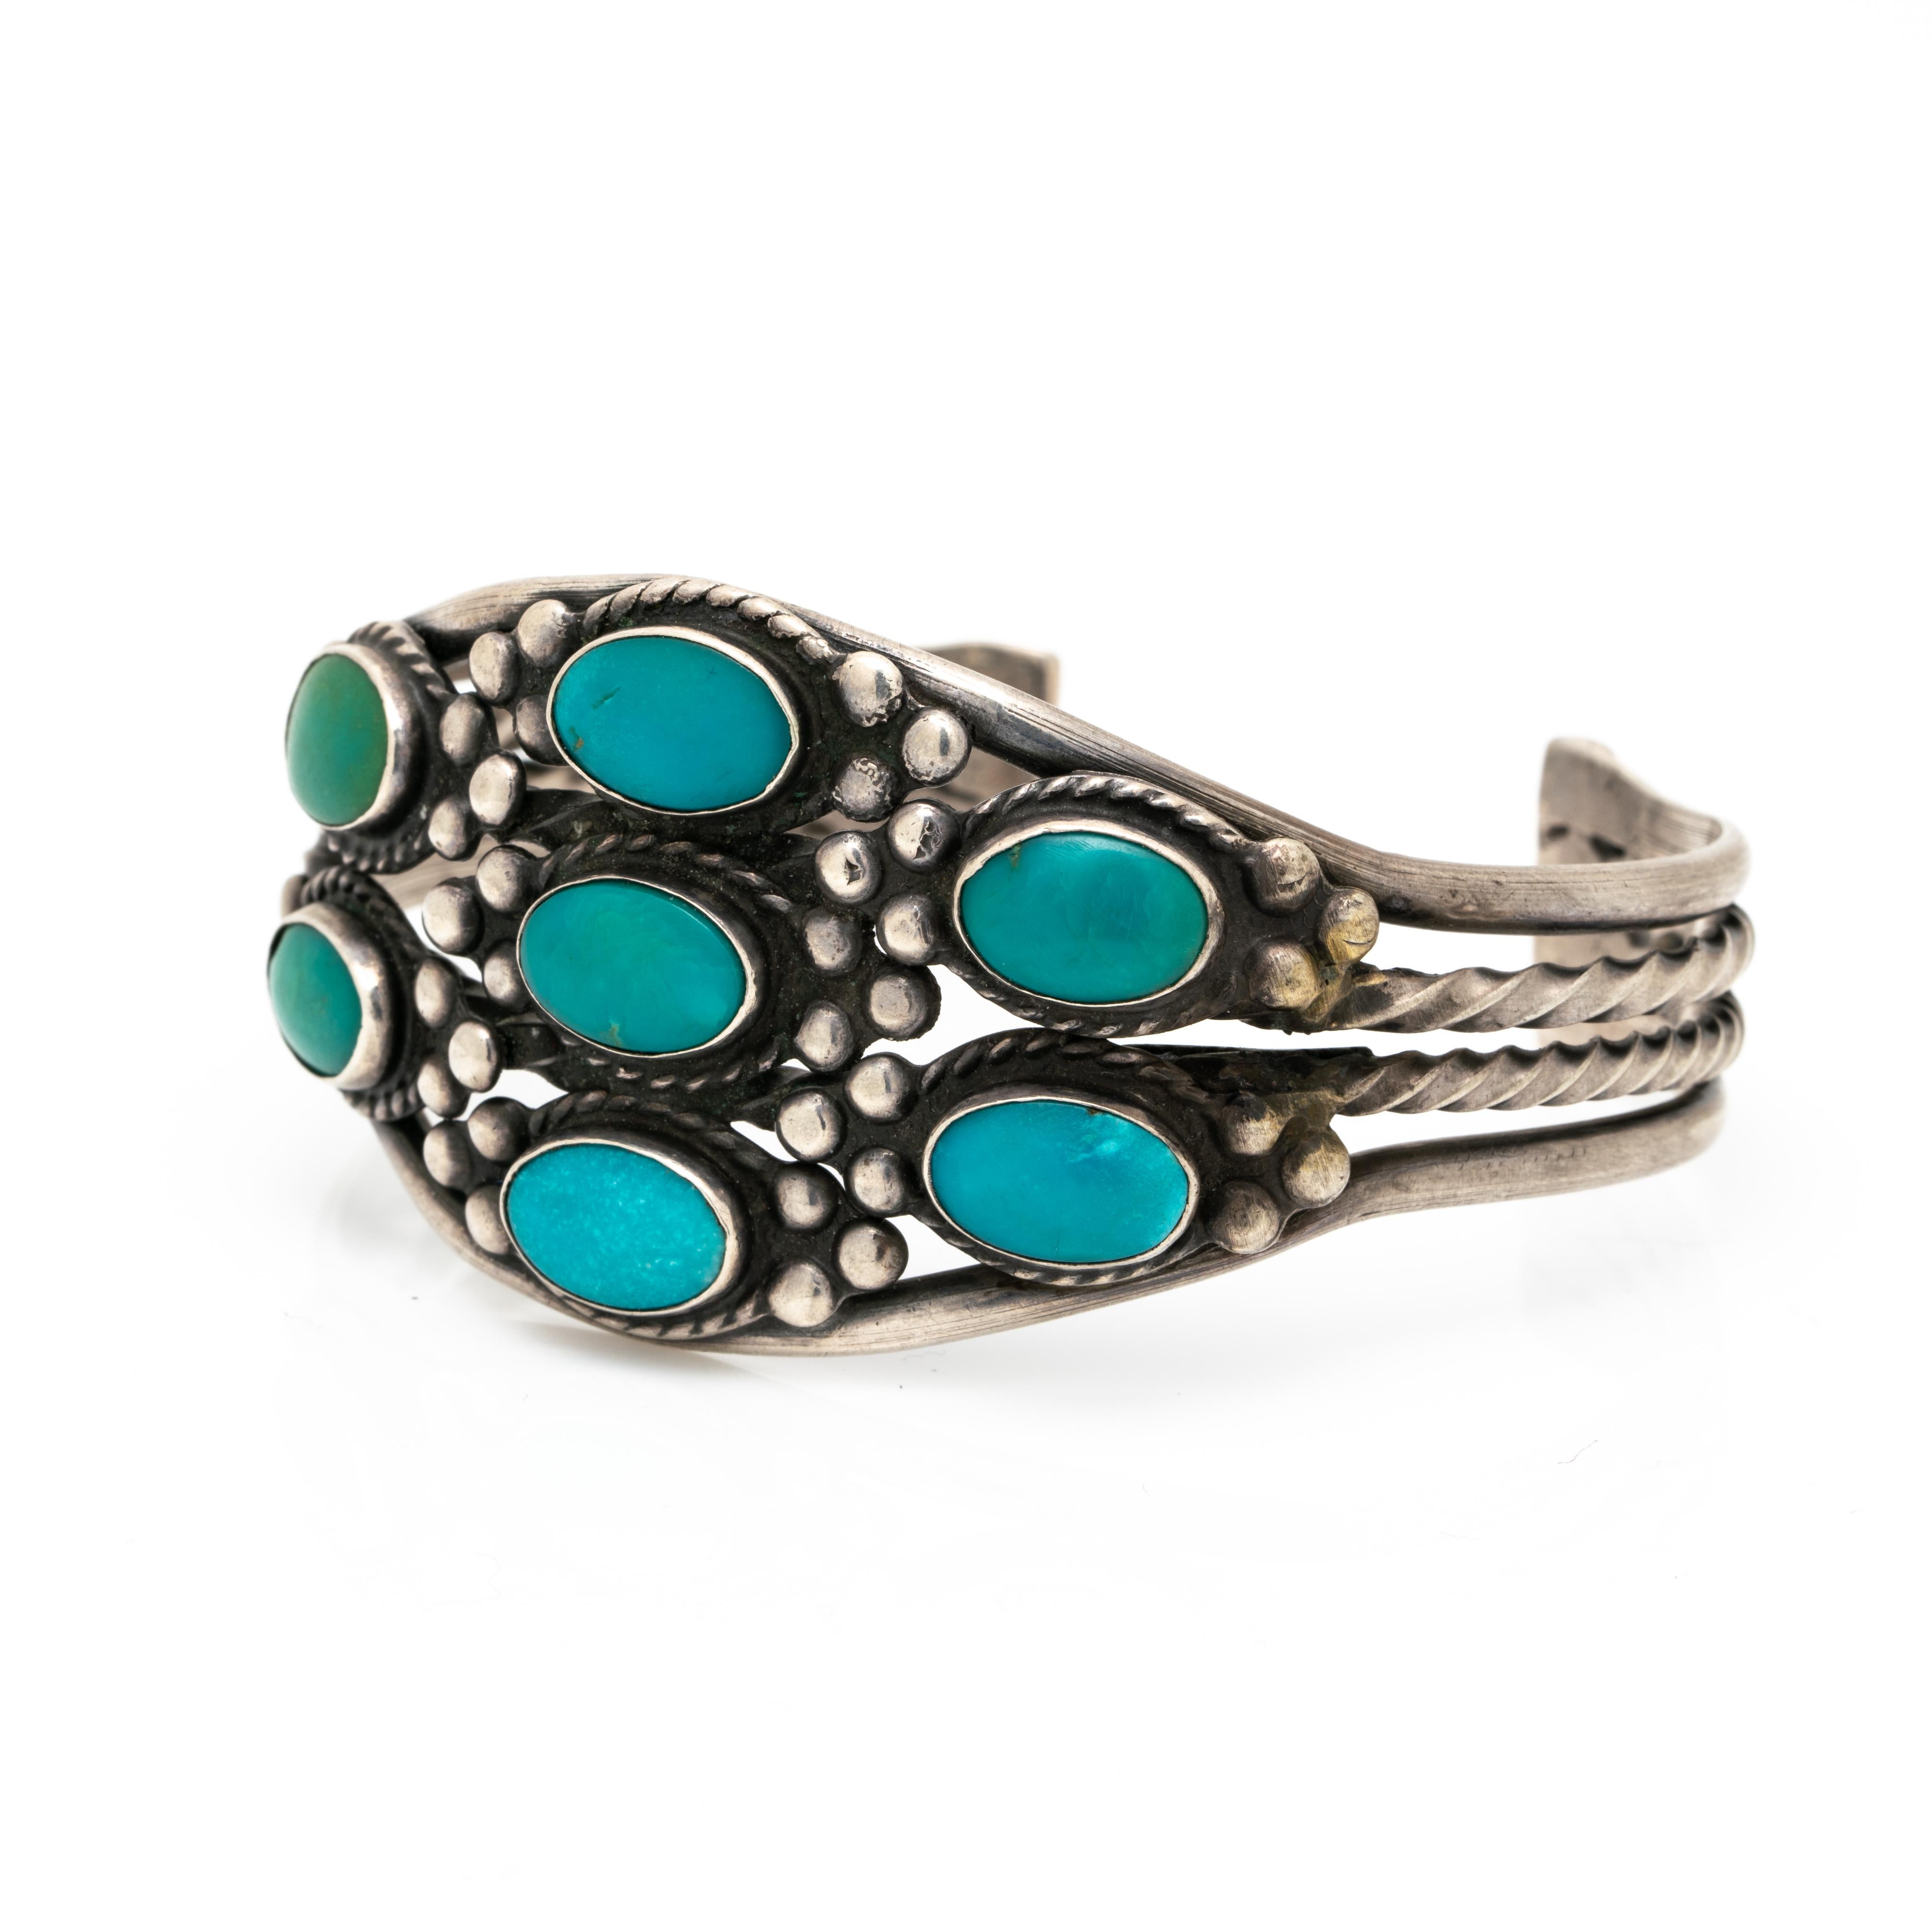 Bracelet amérindien Navajo en turquoise c. 1950s
Gravé et forgé à la main. Une magnifique manchette Navajo !

La patine de l'argent est oxydée, nous ne nettoyons pas les pièces d'argent anciennes et vintage car certains clients les préfèrent dans